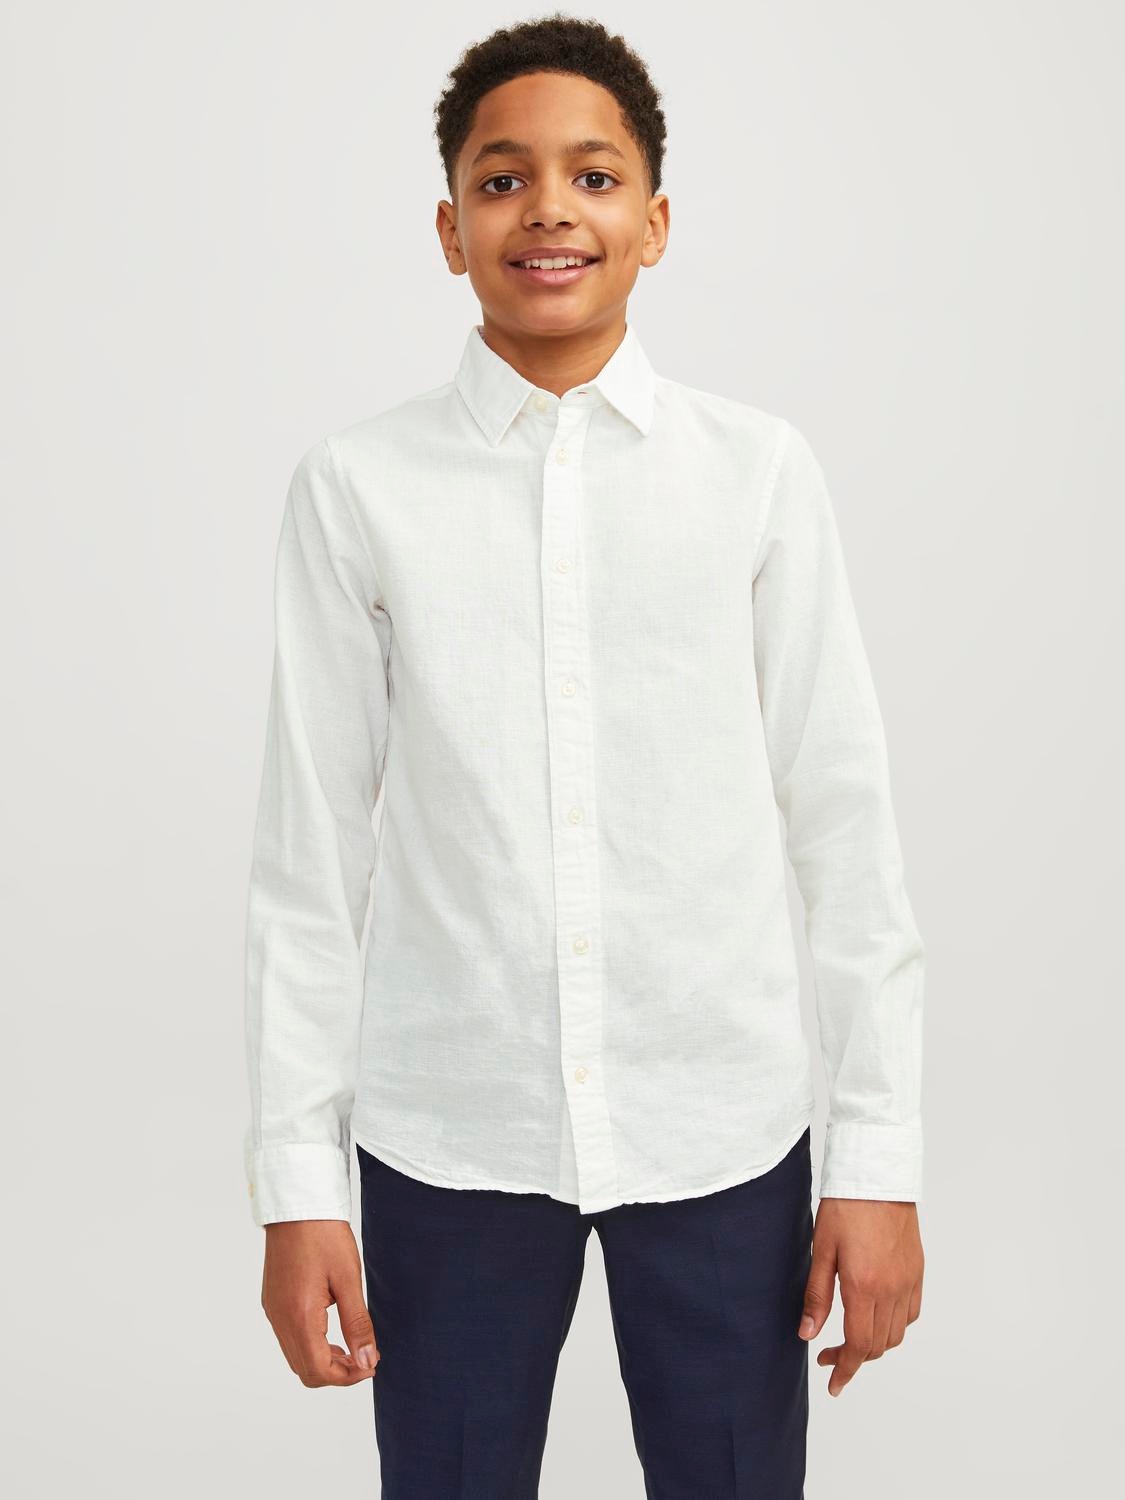 Jack & Jones Shirt For boys -White - 12248936